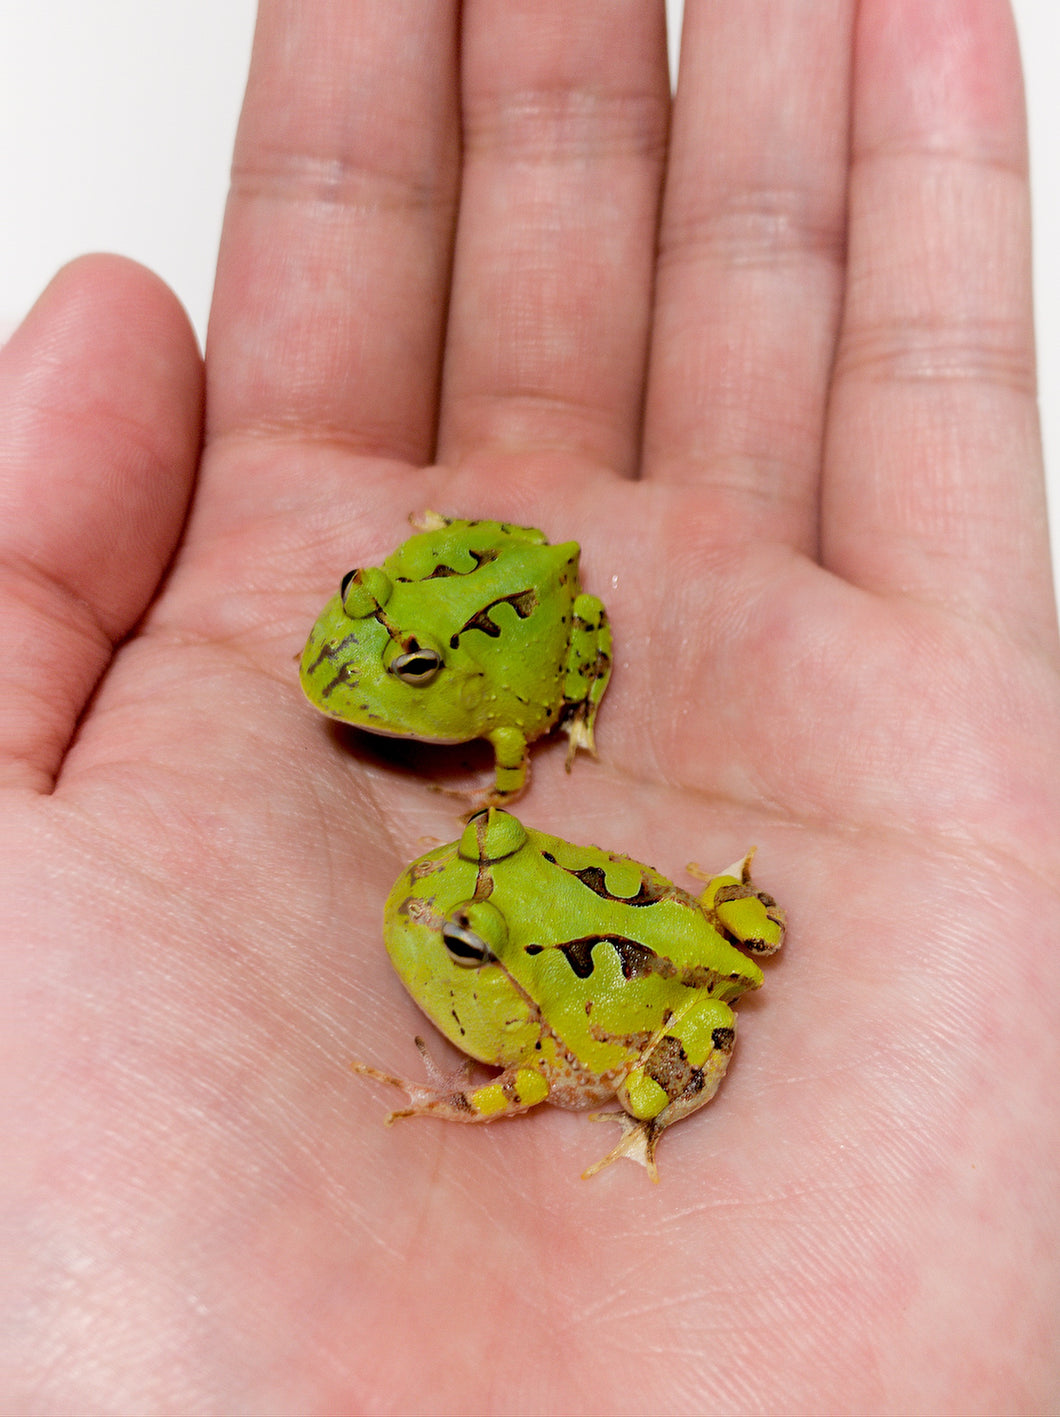 A99 Green Surinam Horned Pacman Frog - Ceratophrys cornuta